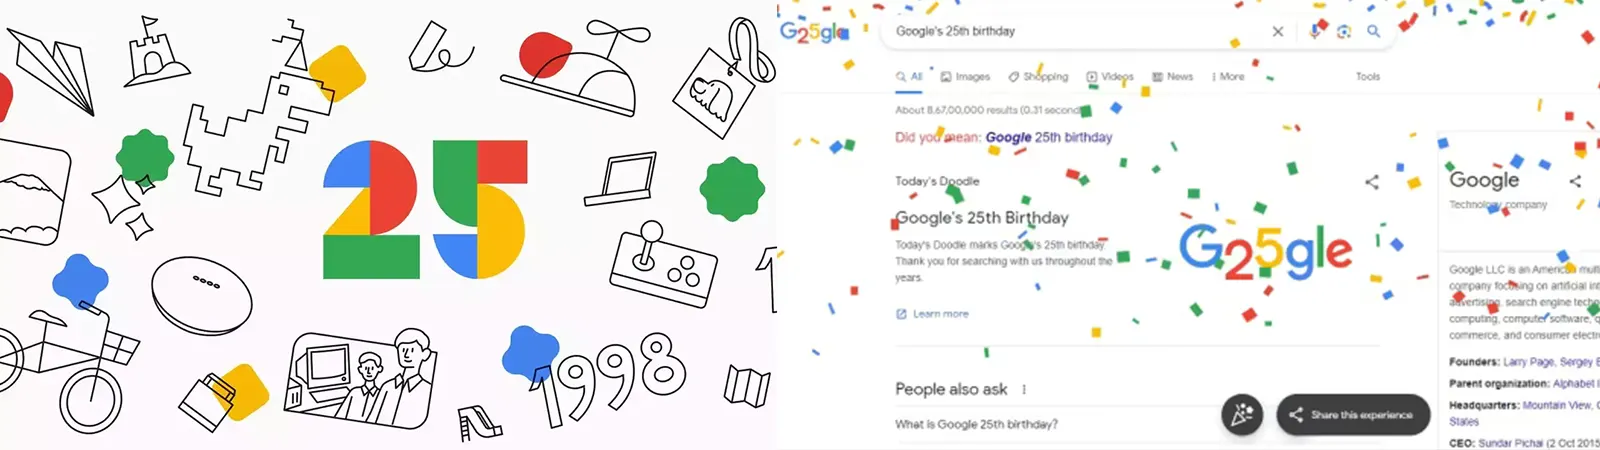 Google Birthday: 25 साल का हुआ Google, जानें Google के No 1 Search Engine बनने तक का सफ़र